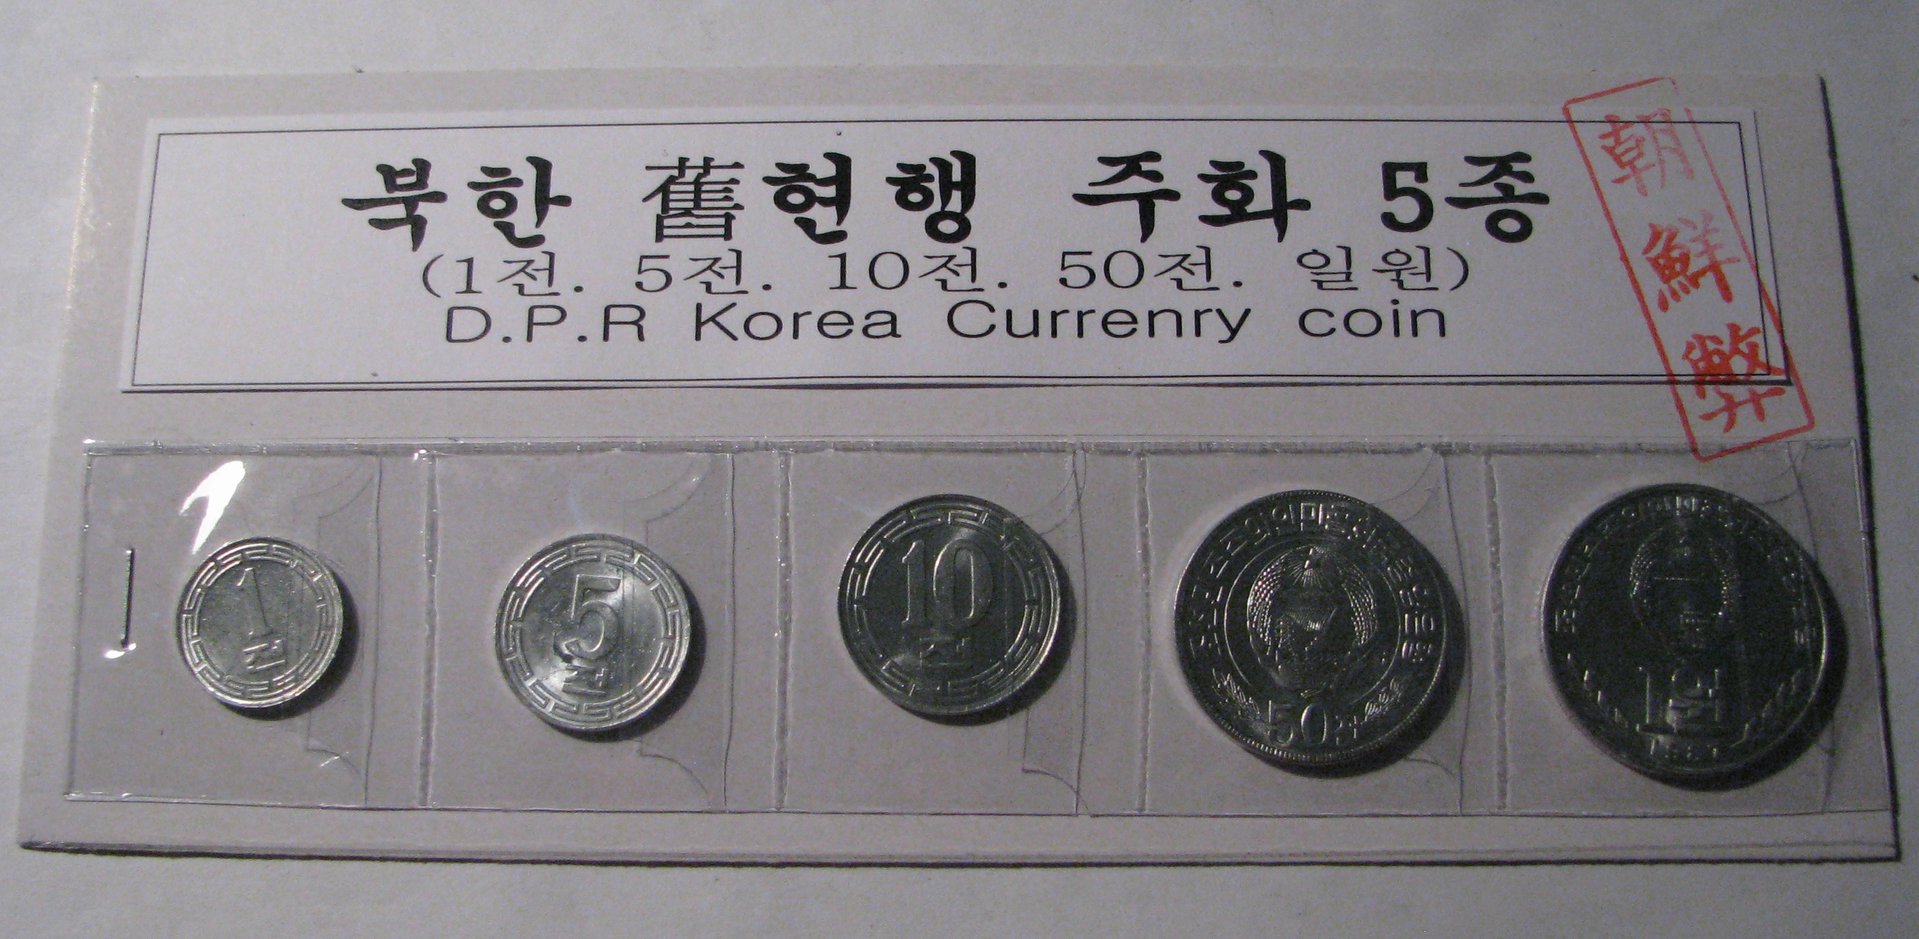 DPRK Coin Set.jpg